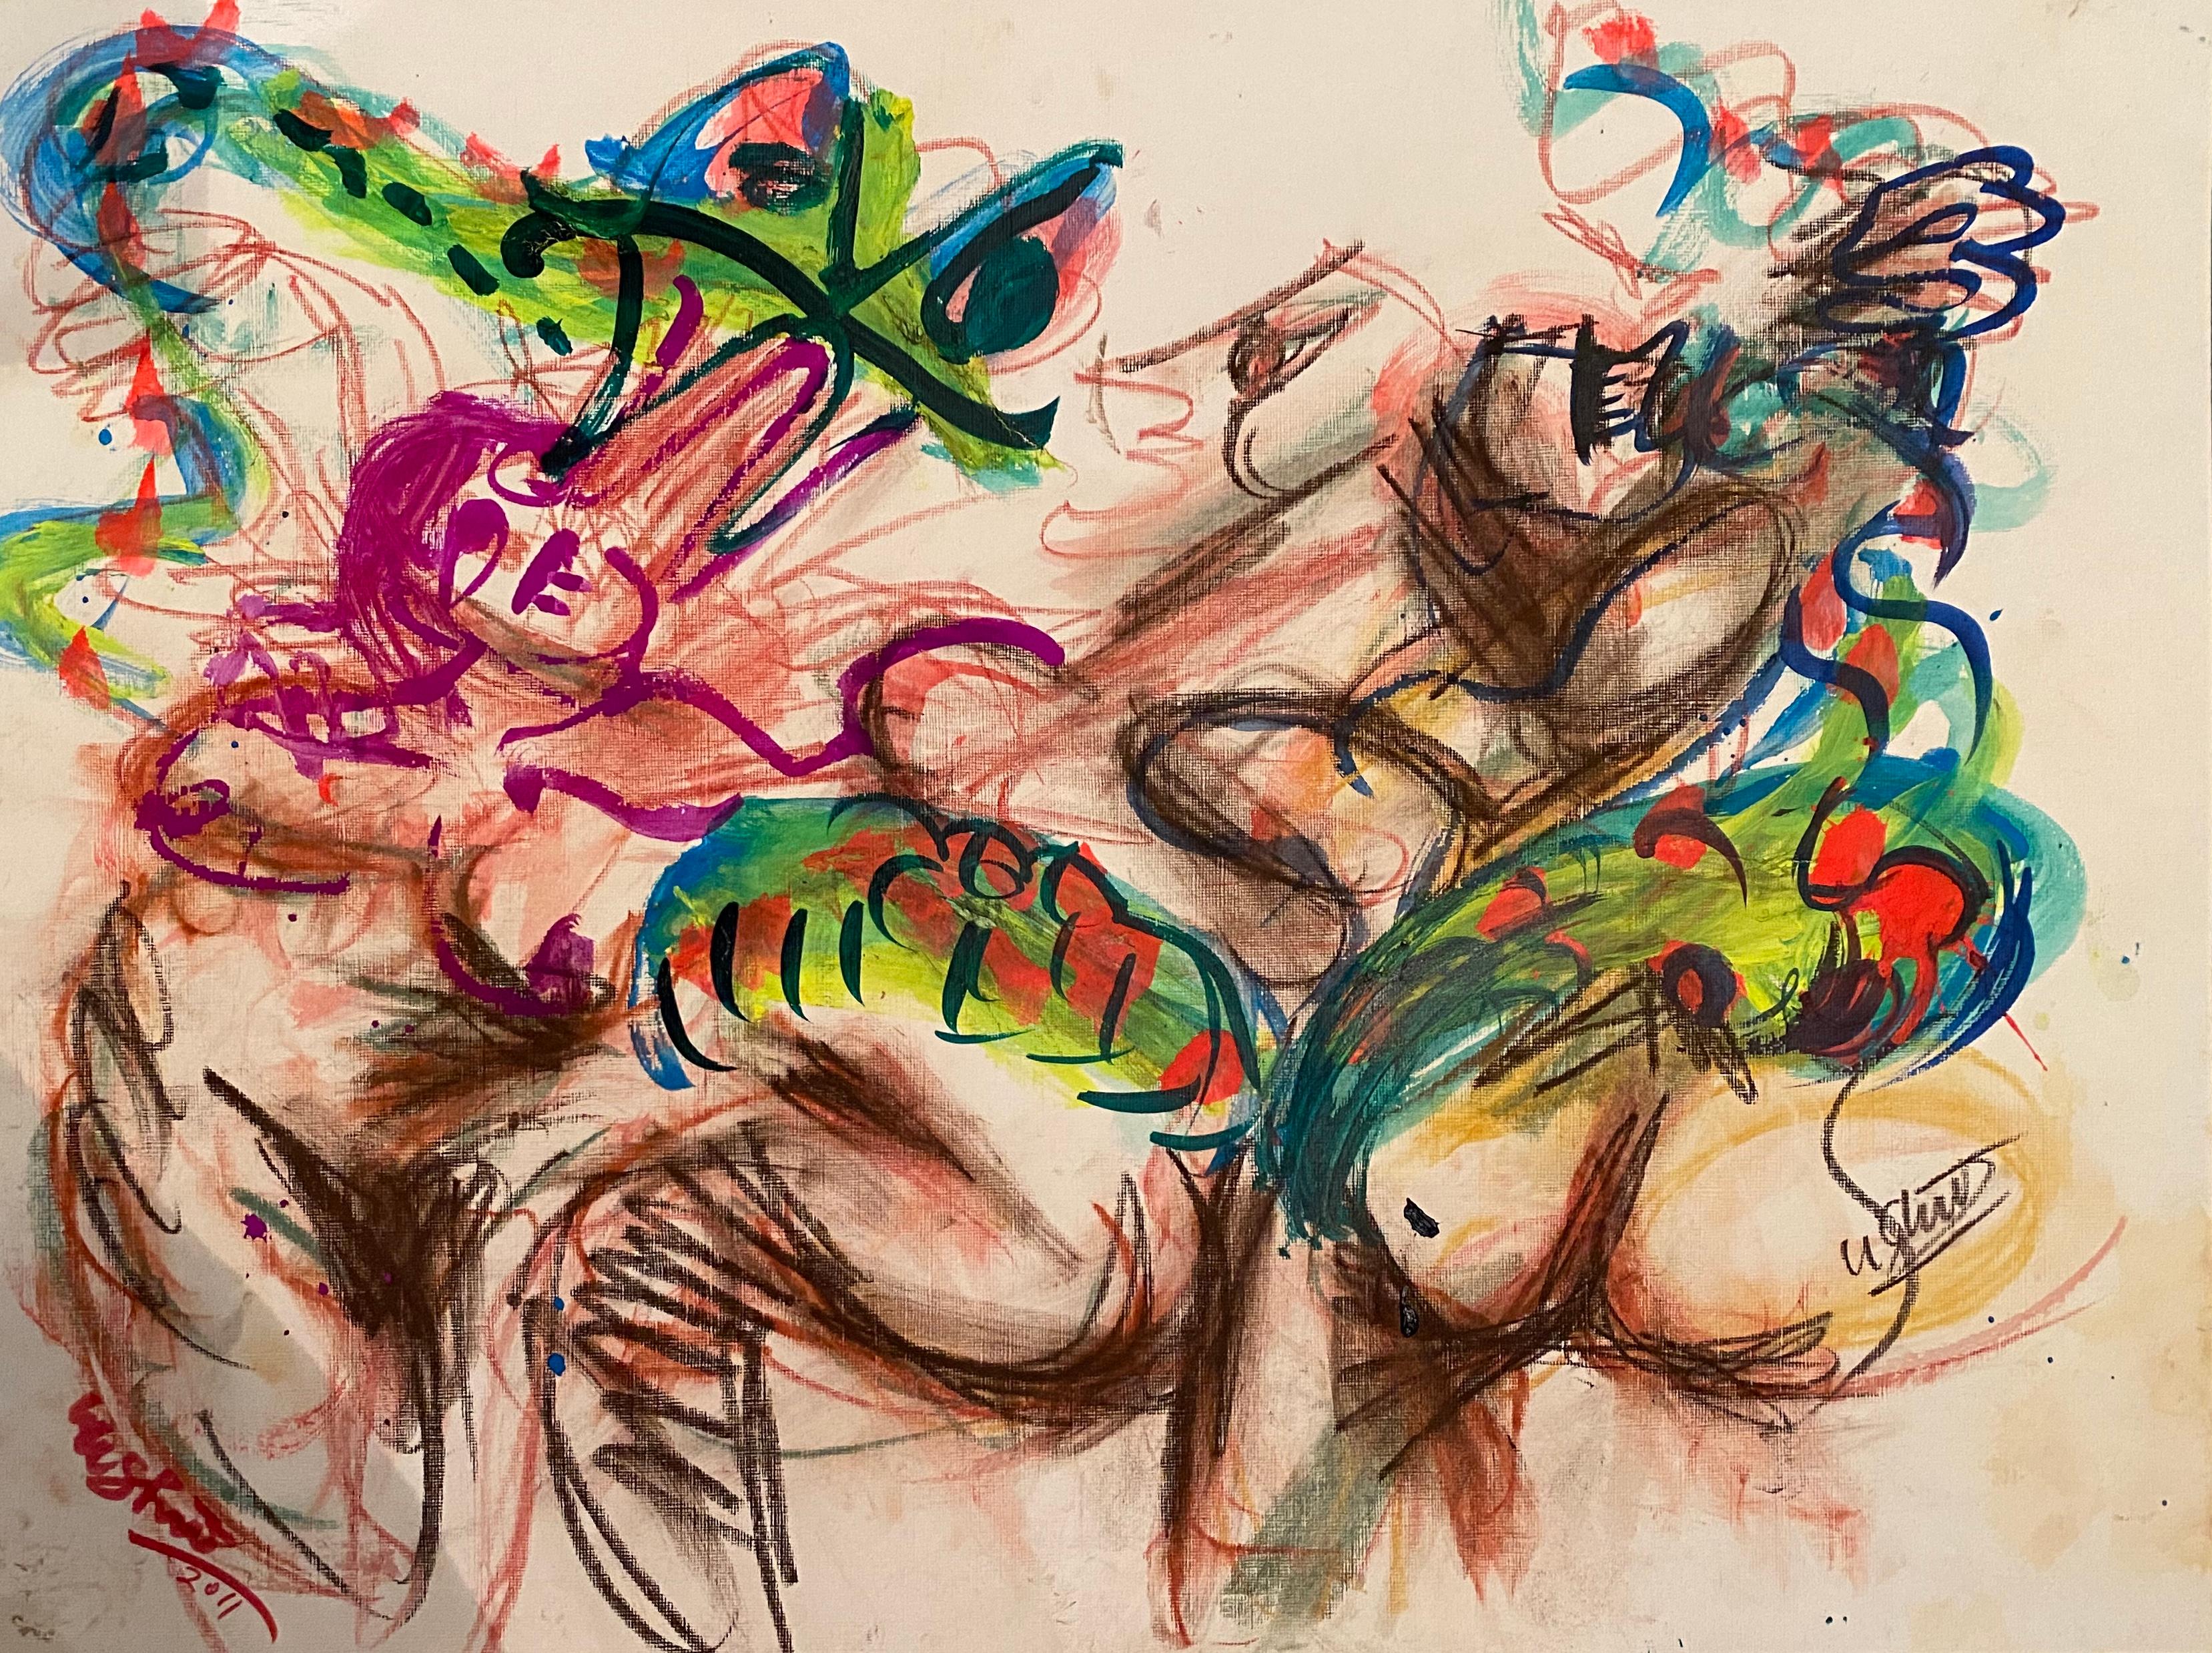 "A Big Snake and Three, " Mixed Media on Paper - Abstract Expressive Drawing - Mixed Media Art by Ushio Shinohara